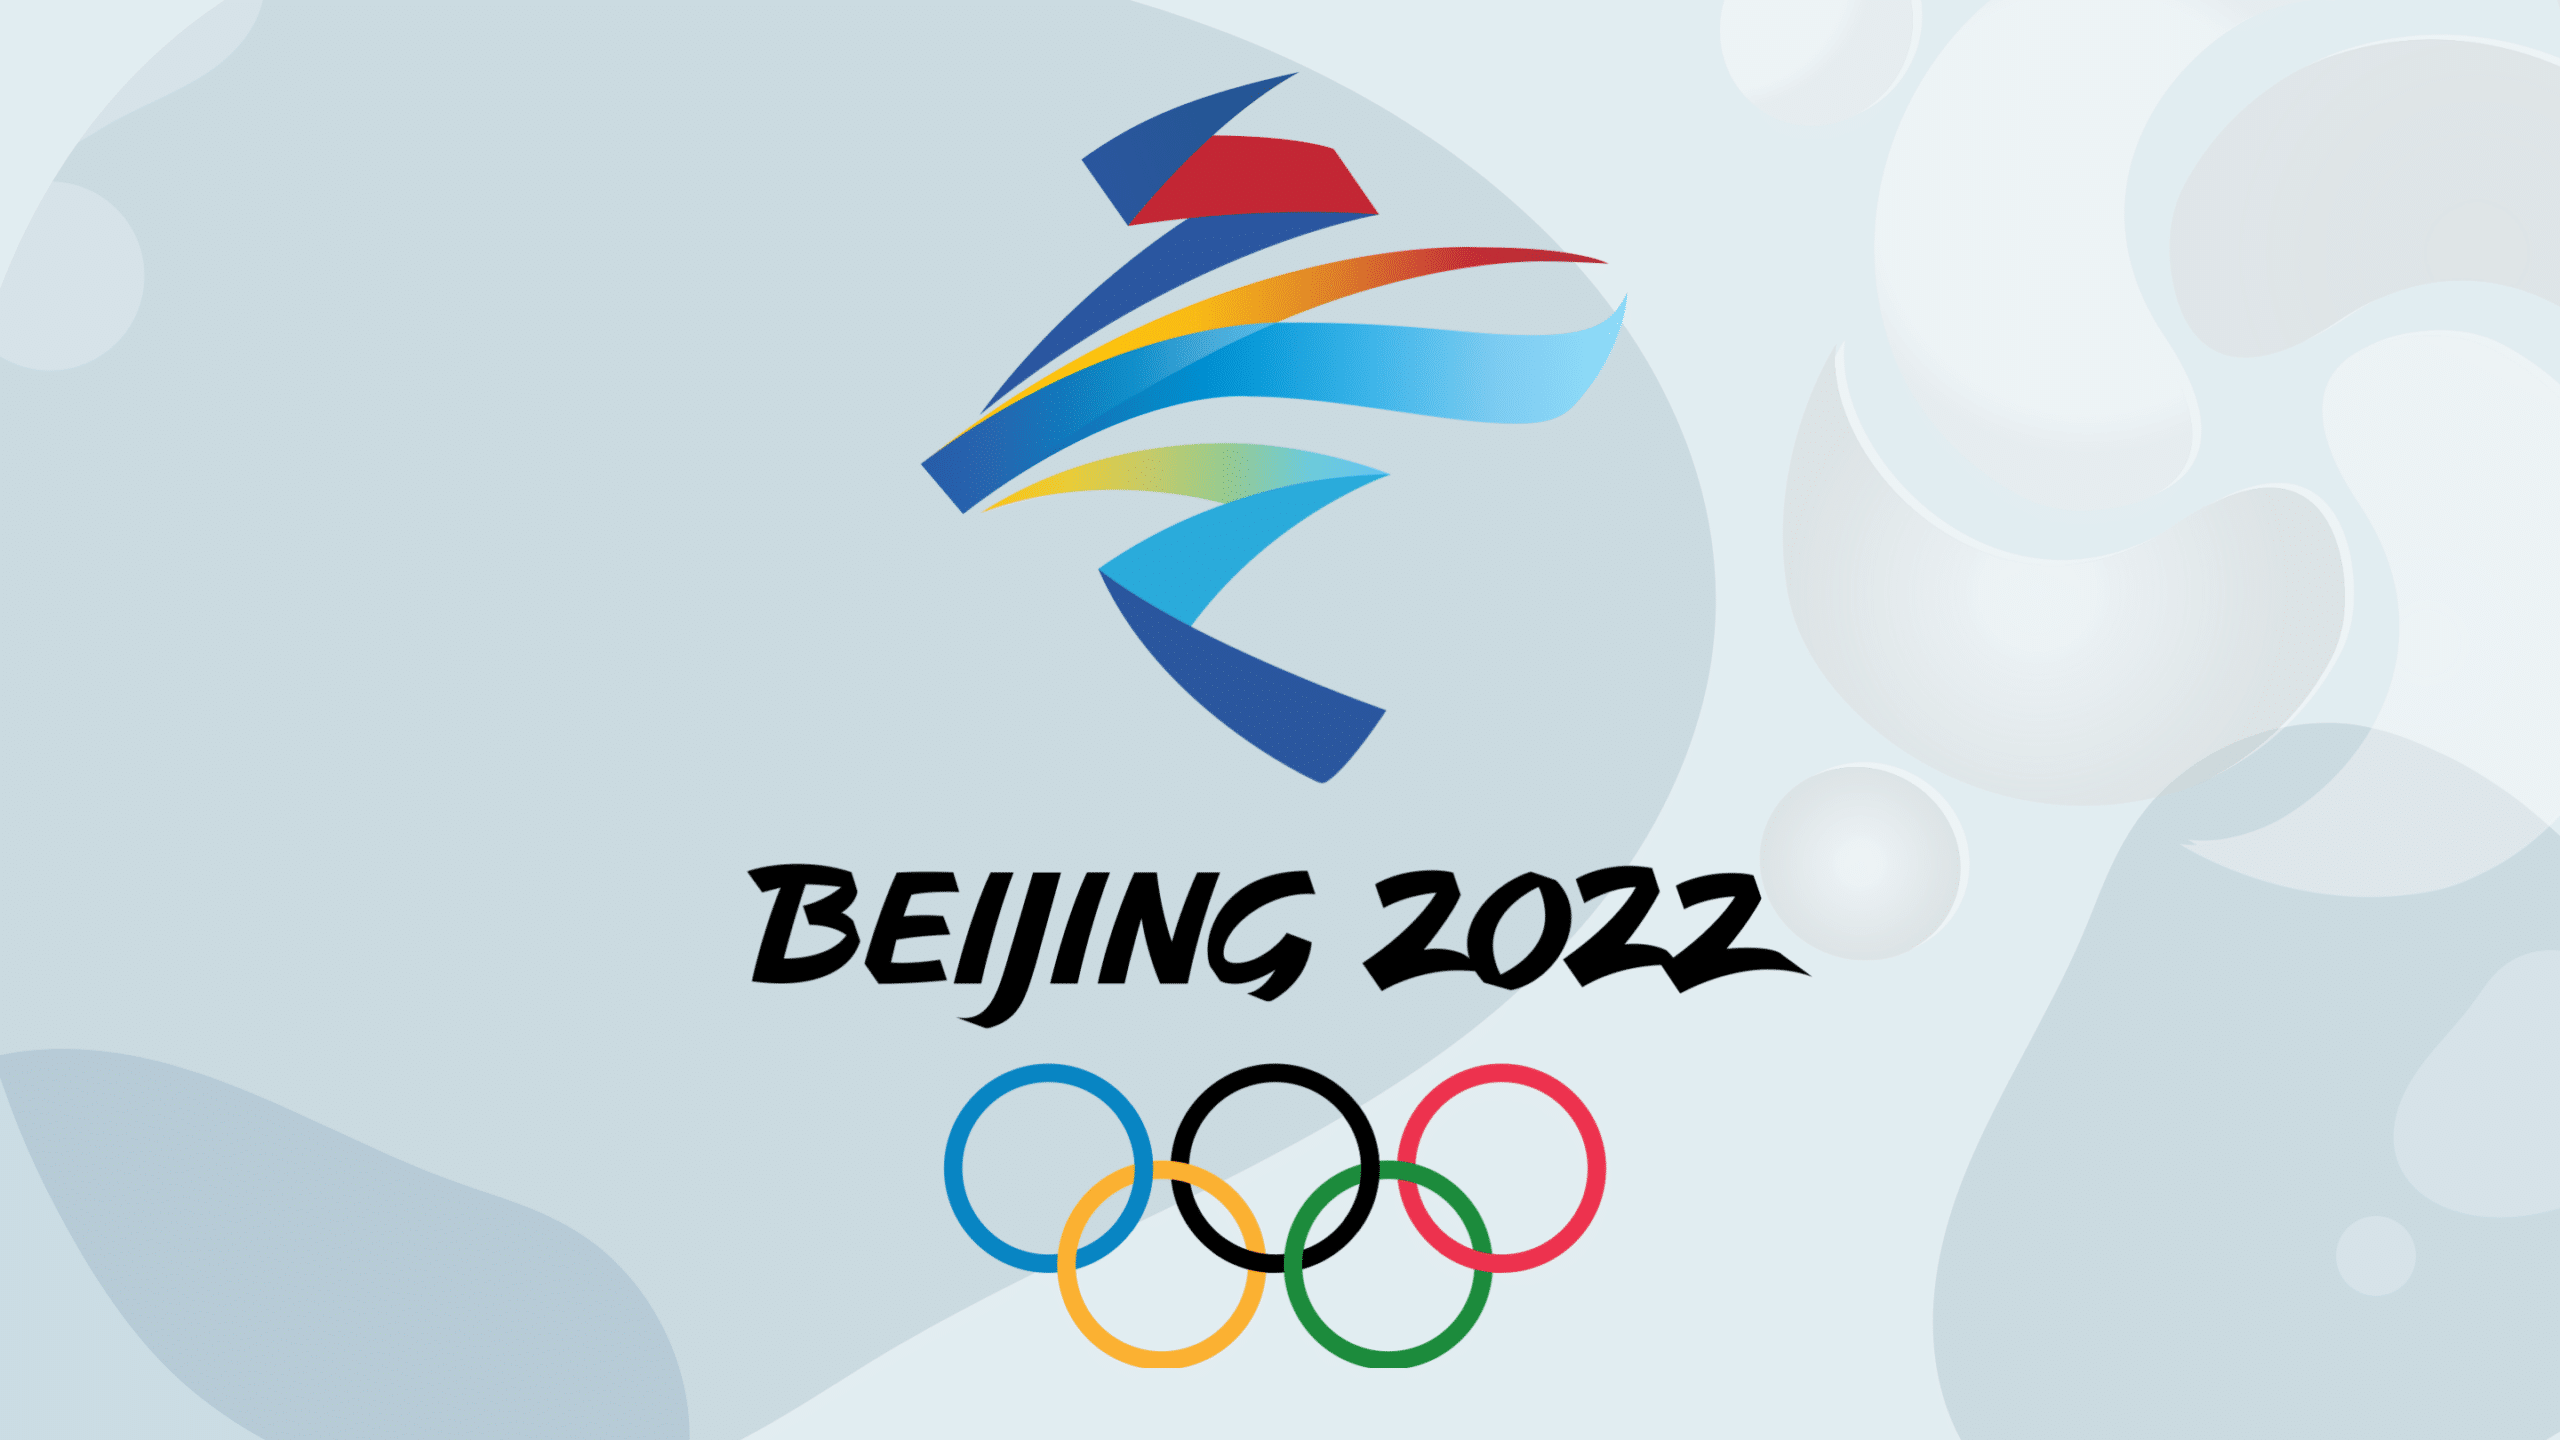 jogos-olimpicos-de-pequim-2022-podem-ser-marcados-por-ciberataques-alerta-fbi